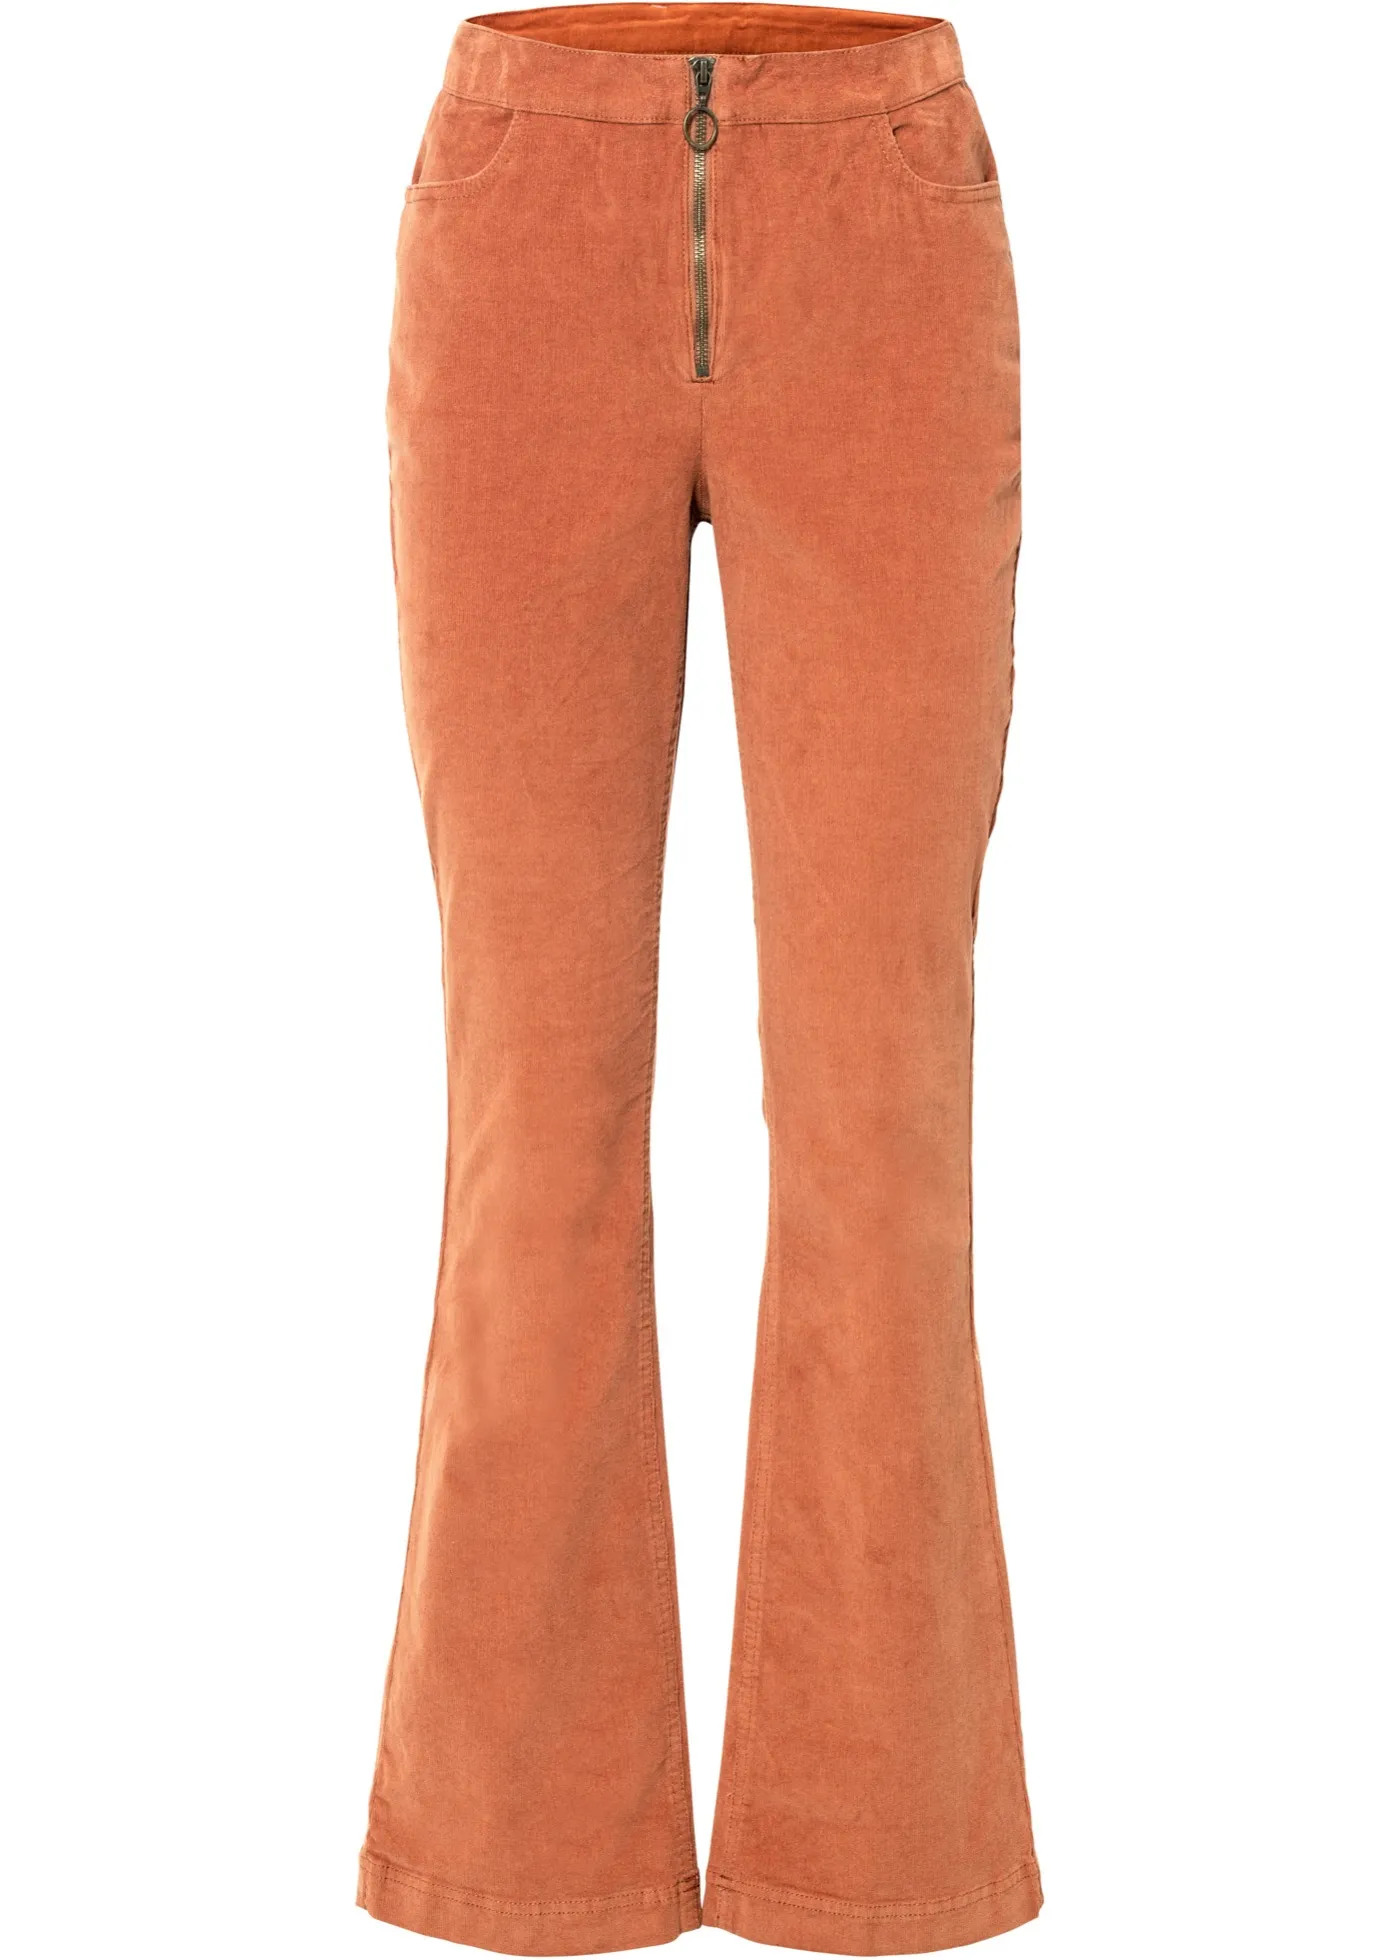 Pantaloni di velluto di cotone biologico (Arancione) - RAINBOW